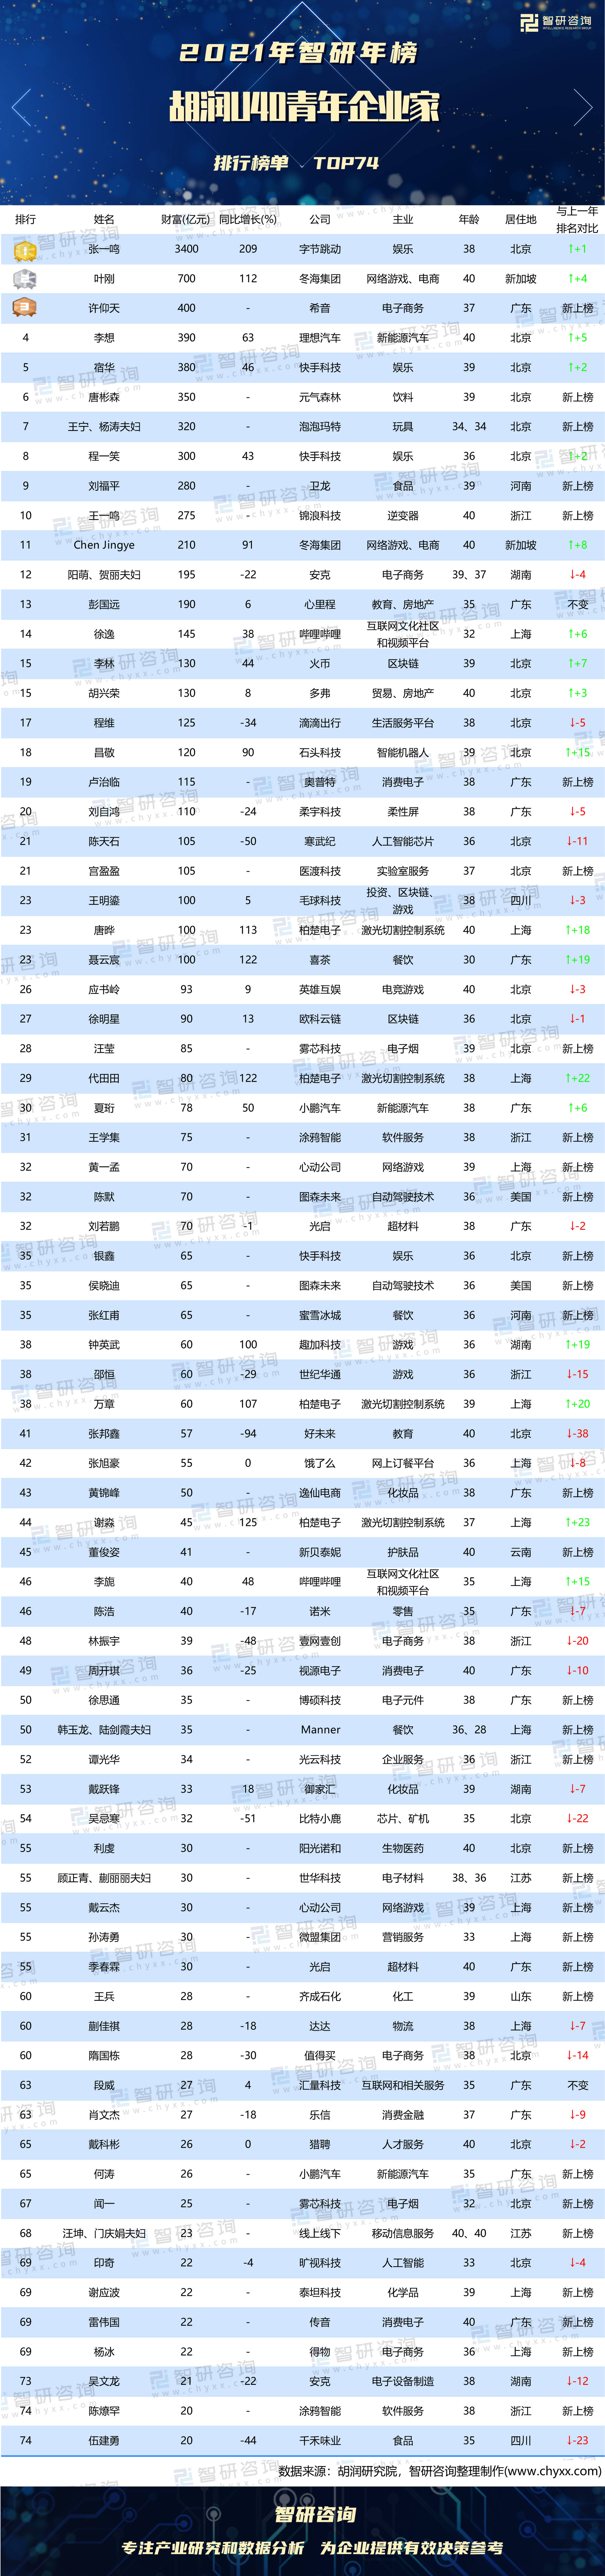 蓝春资产排行_媒体公布艺人资产排行榜,周董只排第2,榜首是身价2千亿的他